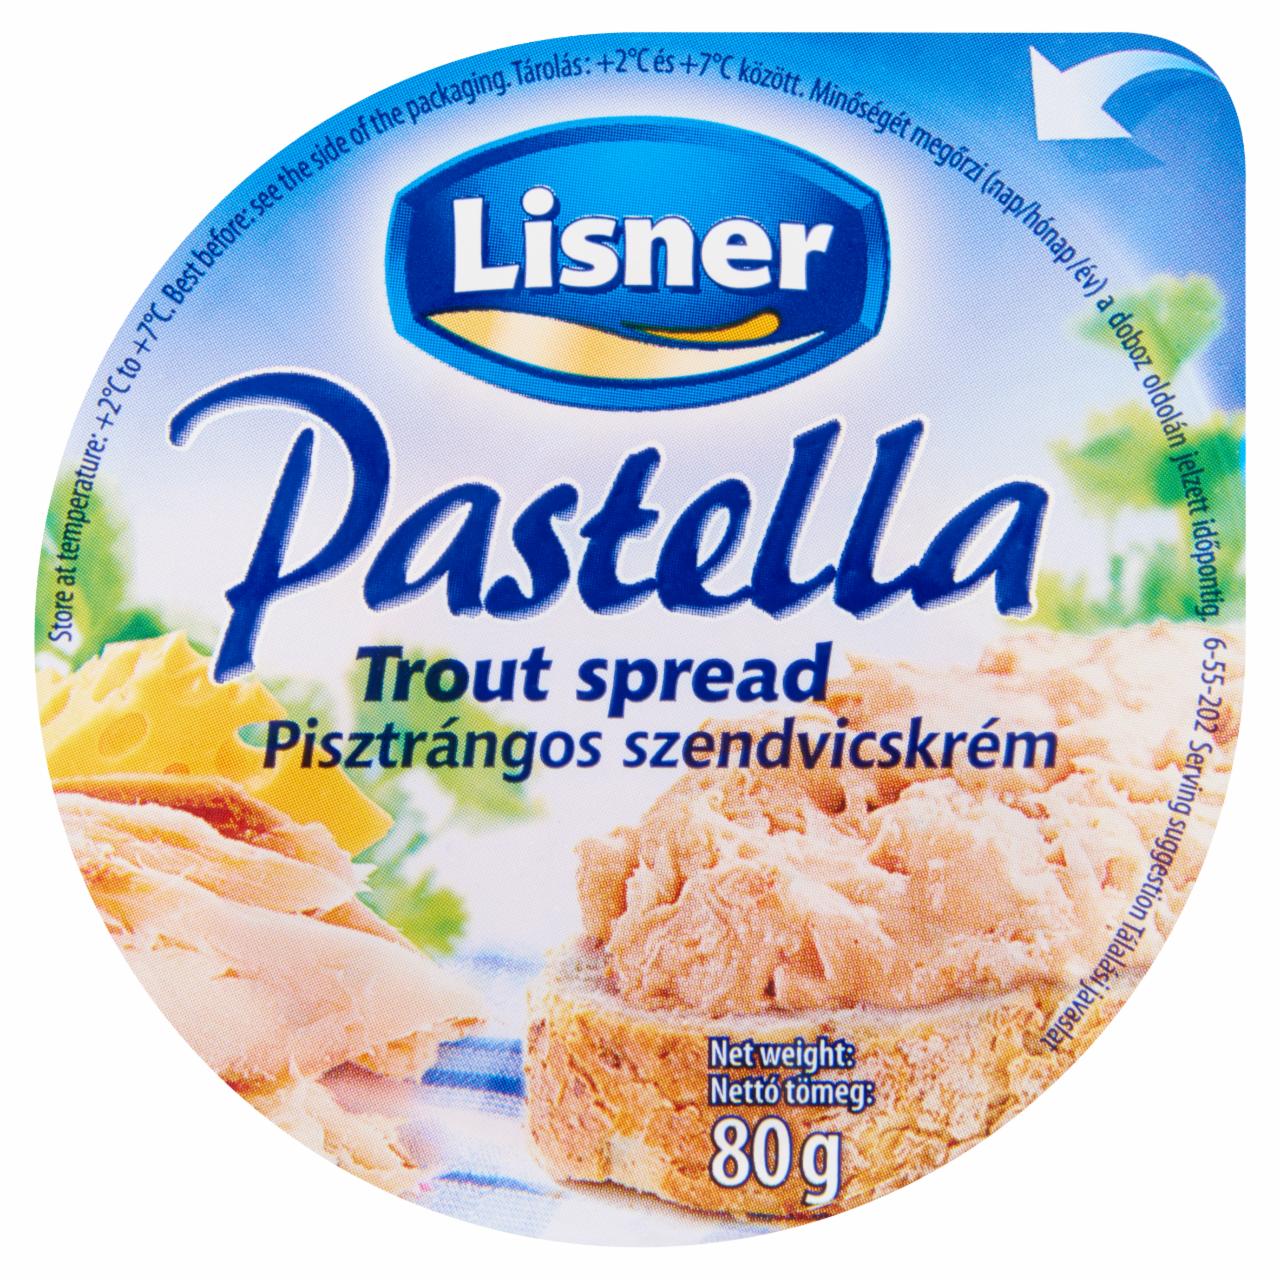 Képek - Lisner Pastella pisztrángos szendvicskrém 80 g